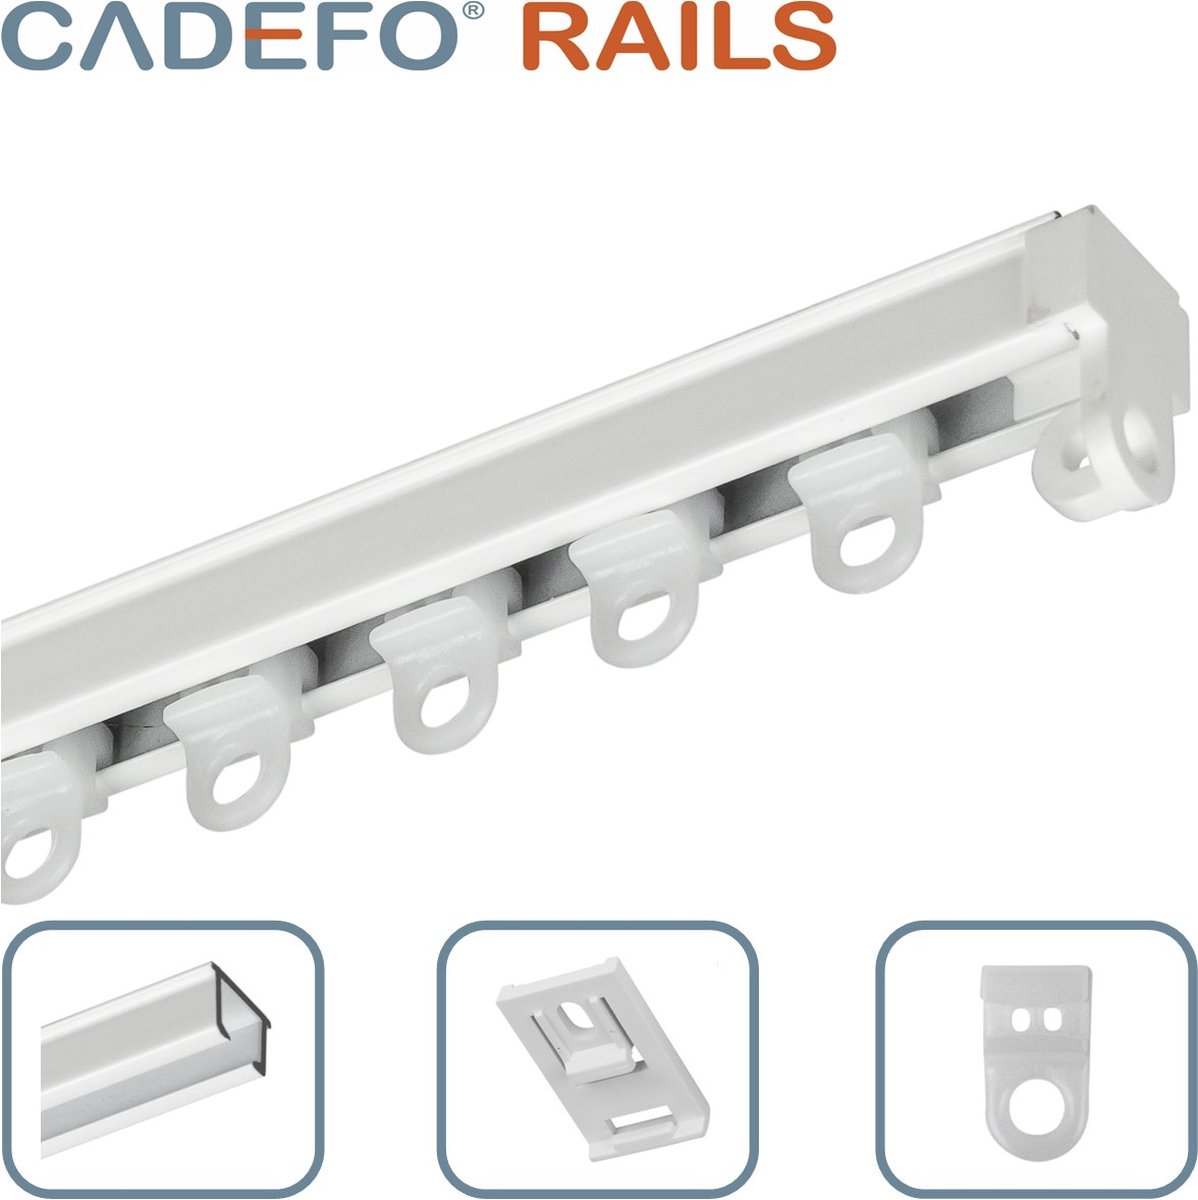 CADEFO RAILS (201 - 250 cm) Gordijnrails - Compleet op maat! - UIT 1 STUK - Leverbaar tot 6 meter - Plafondbevestiging - Lengte 245 cm